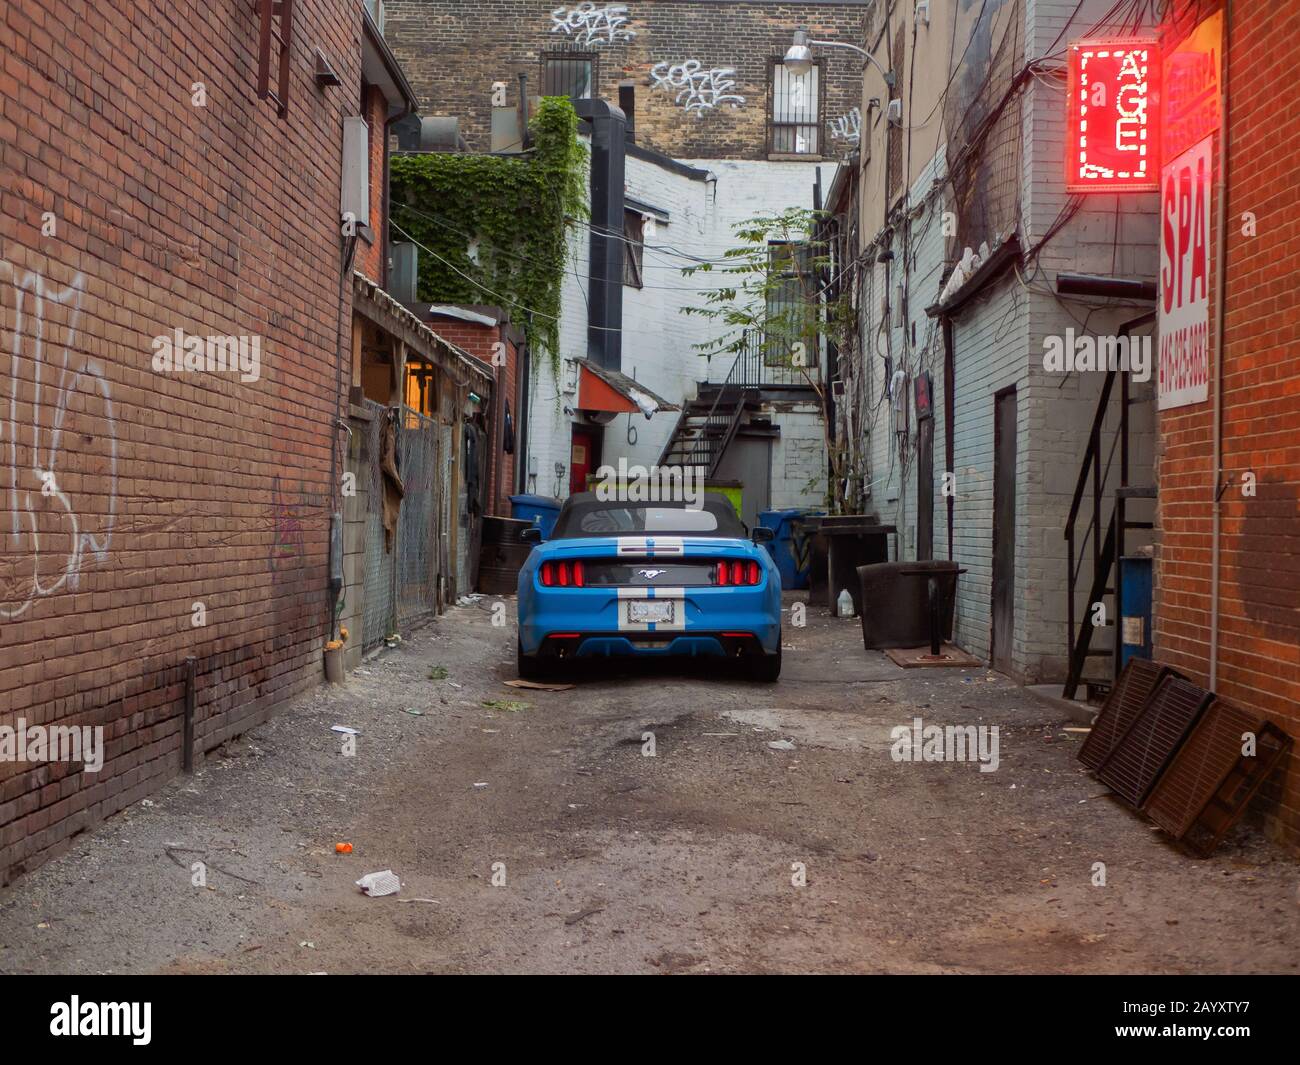 Schönes Auto, das in einer heruntergekommenen Gegend in der Innenstadt von Toronto geparkt wurde. Stockfoto